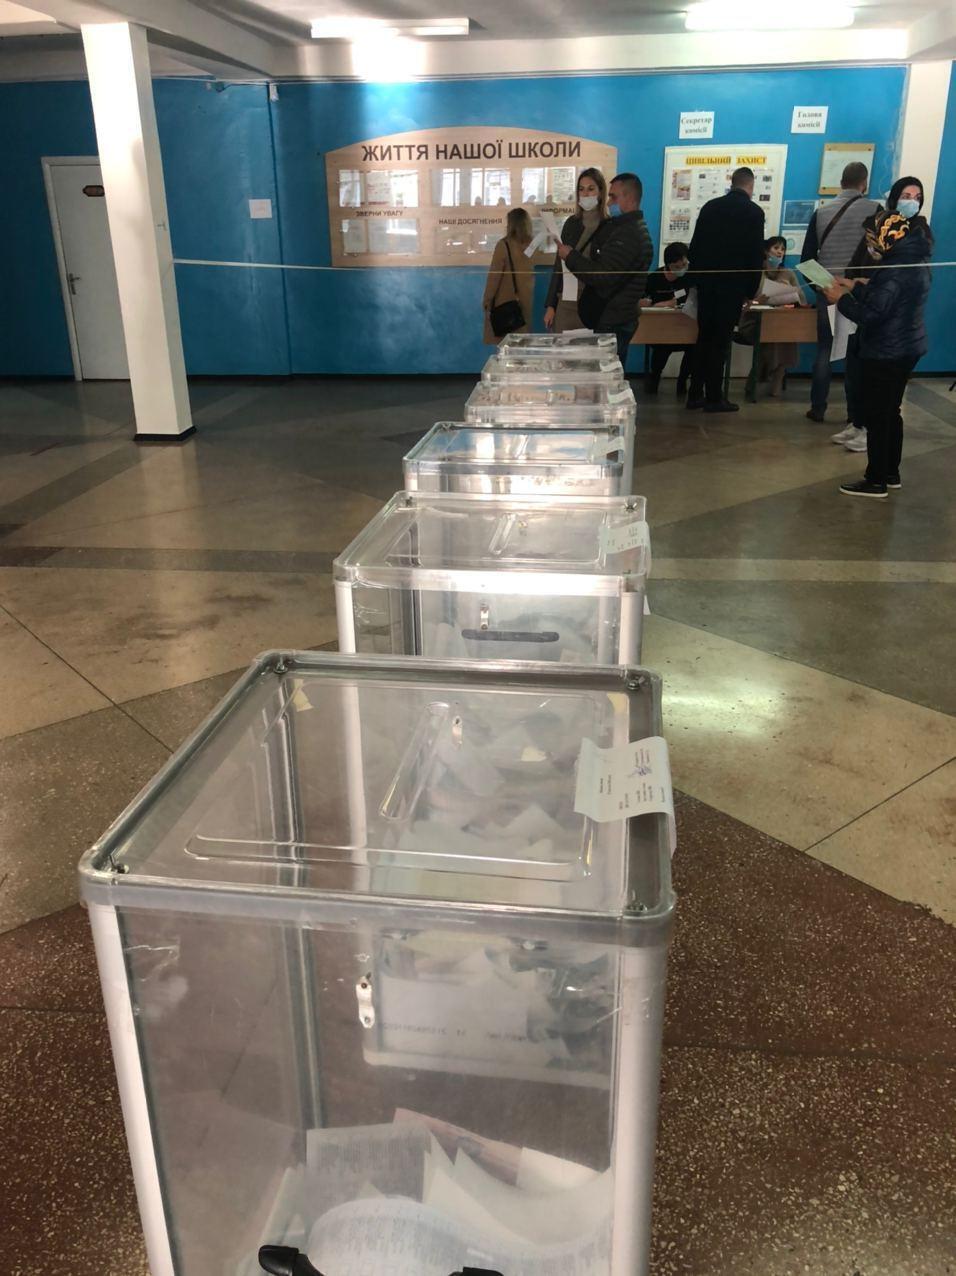 Порушення на місцевих виборах в Україні: що відбувалося на виборчих дільницях. Фото і відео